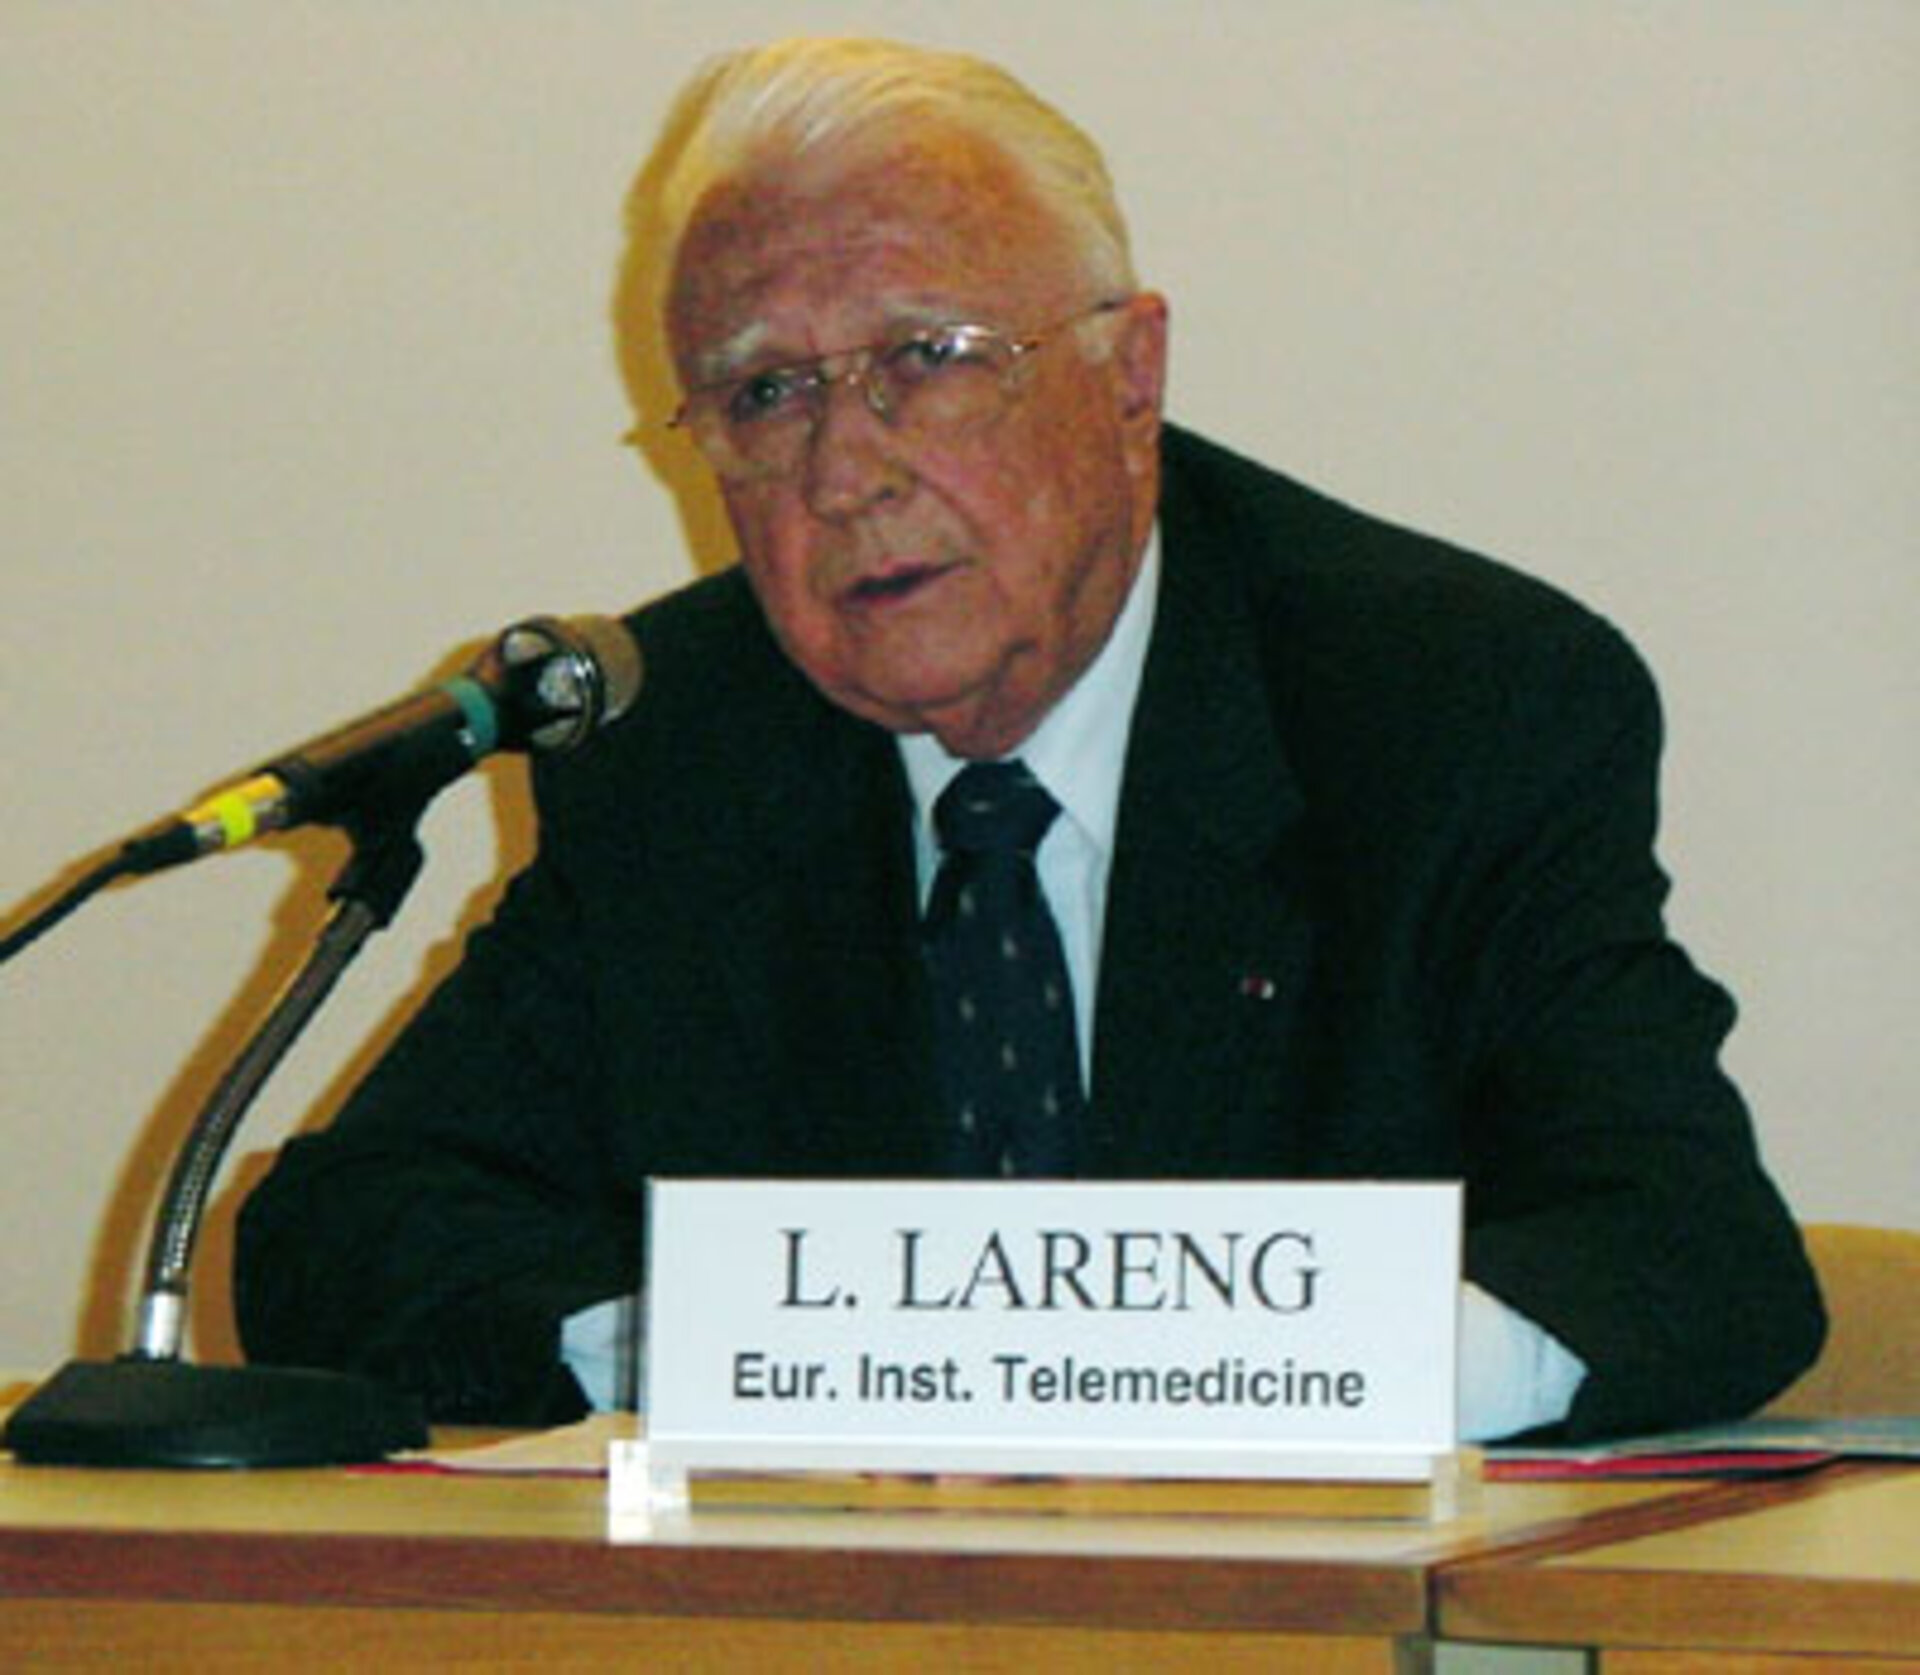 Prof. Lareng